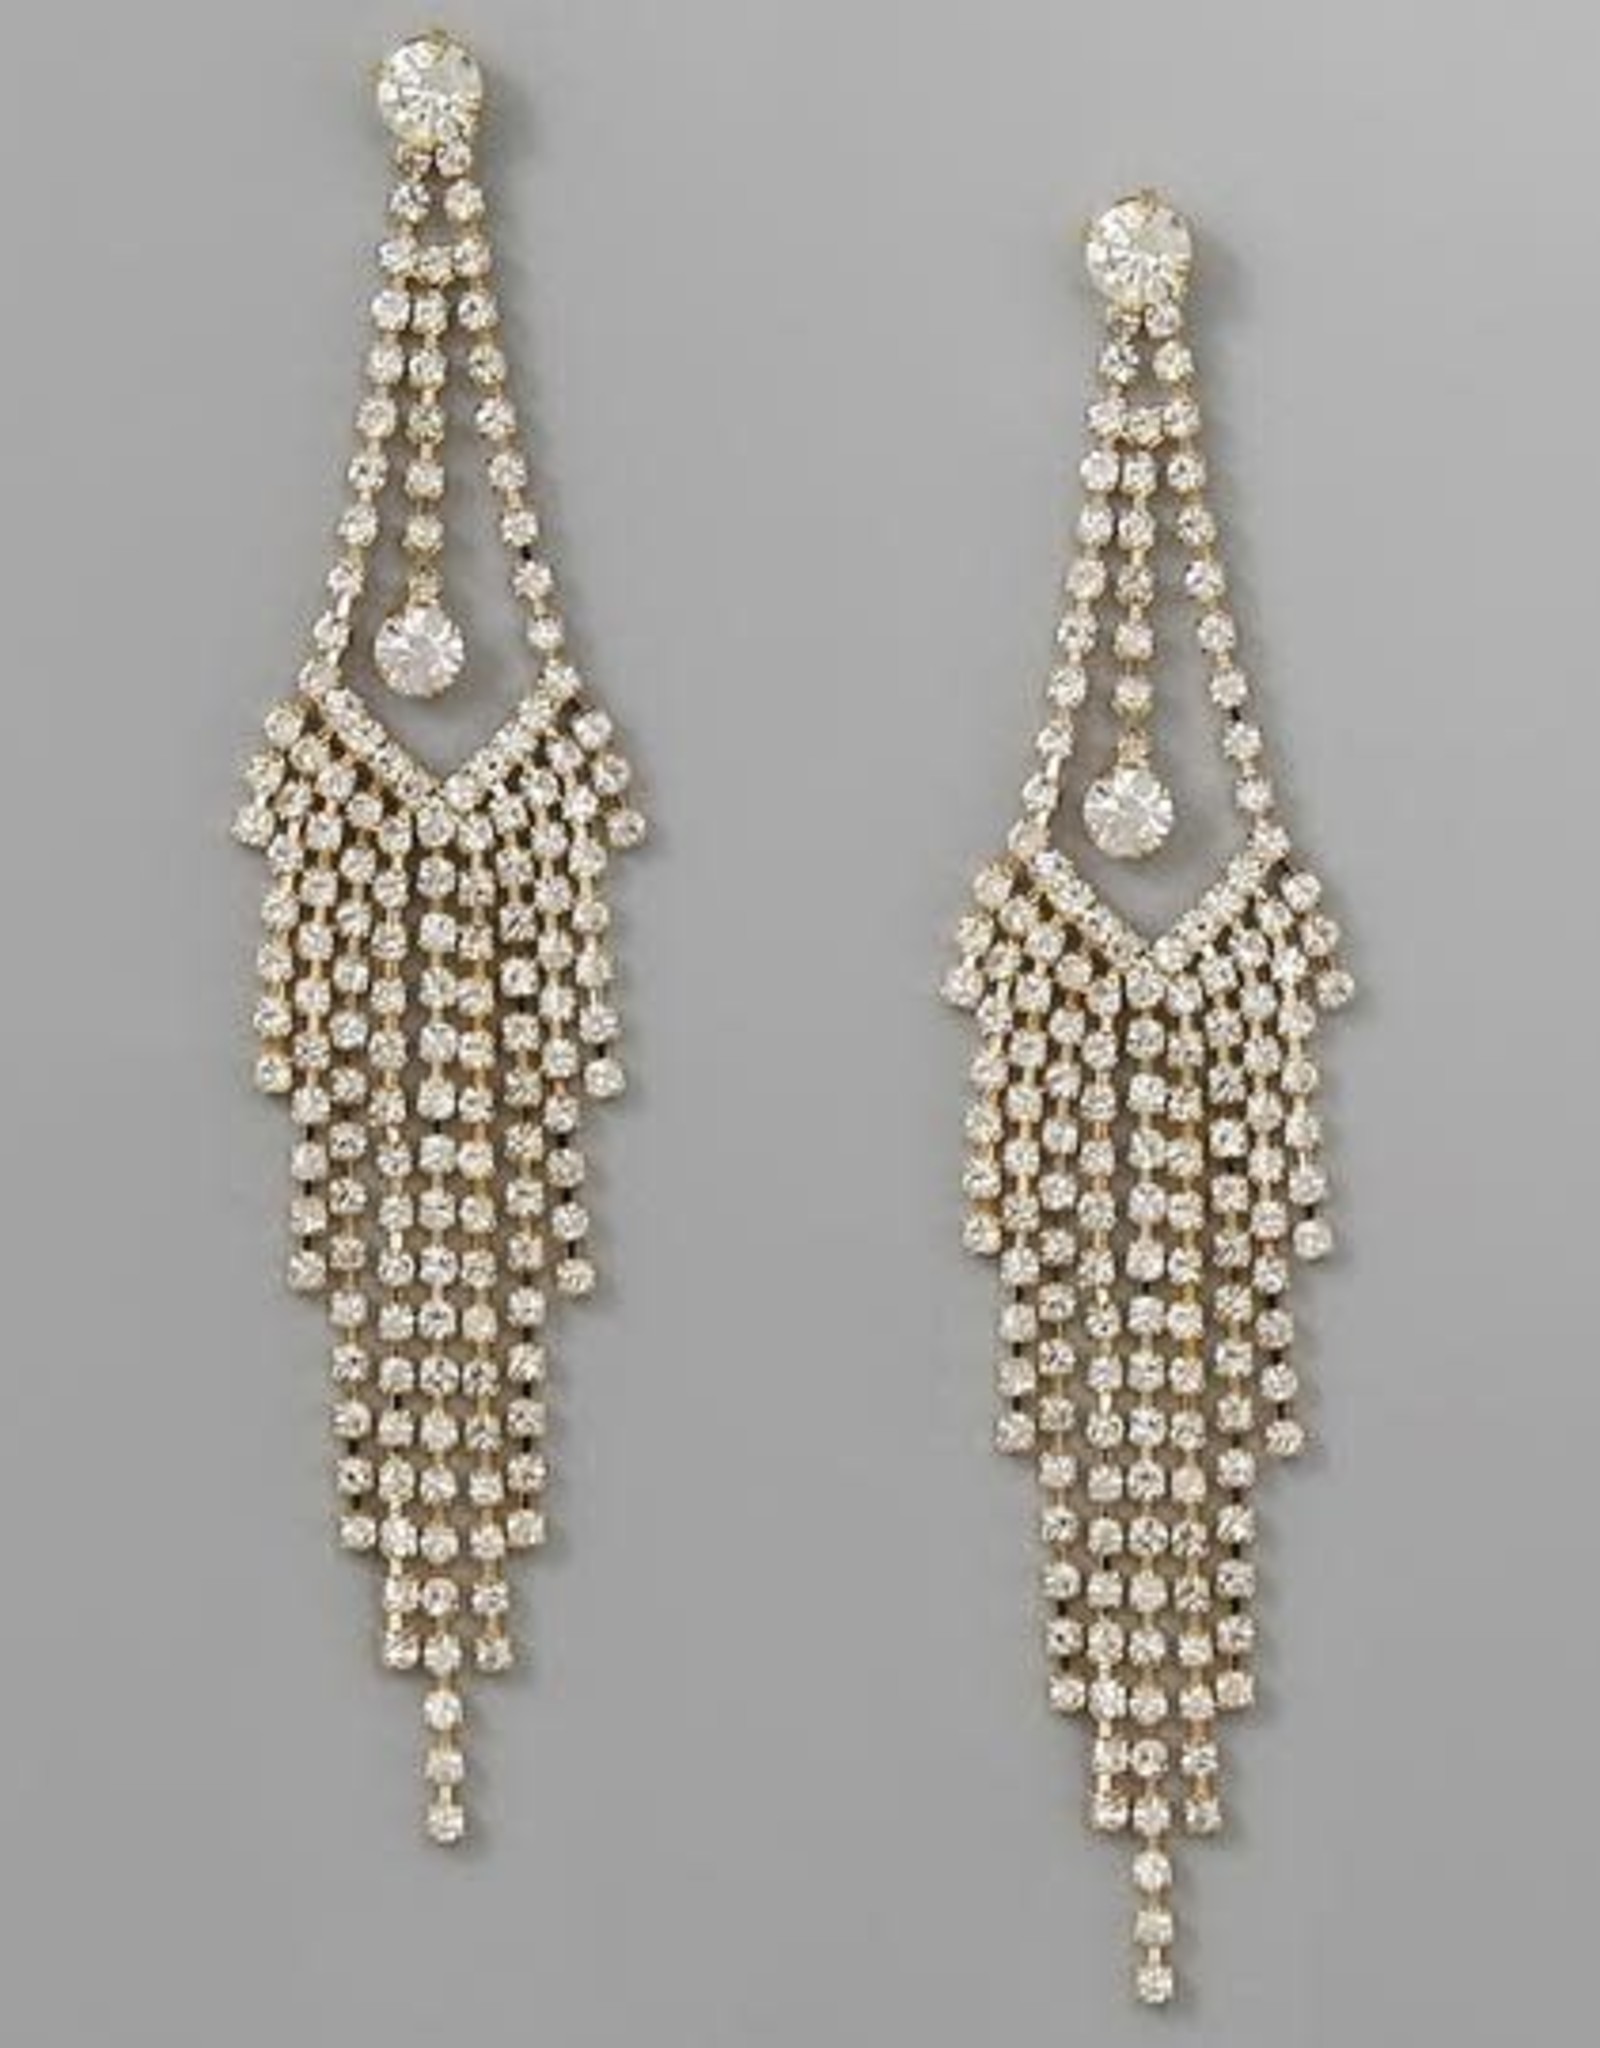 Rhinestone Pave Chandelier Earrings - Gold